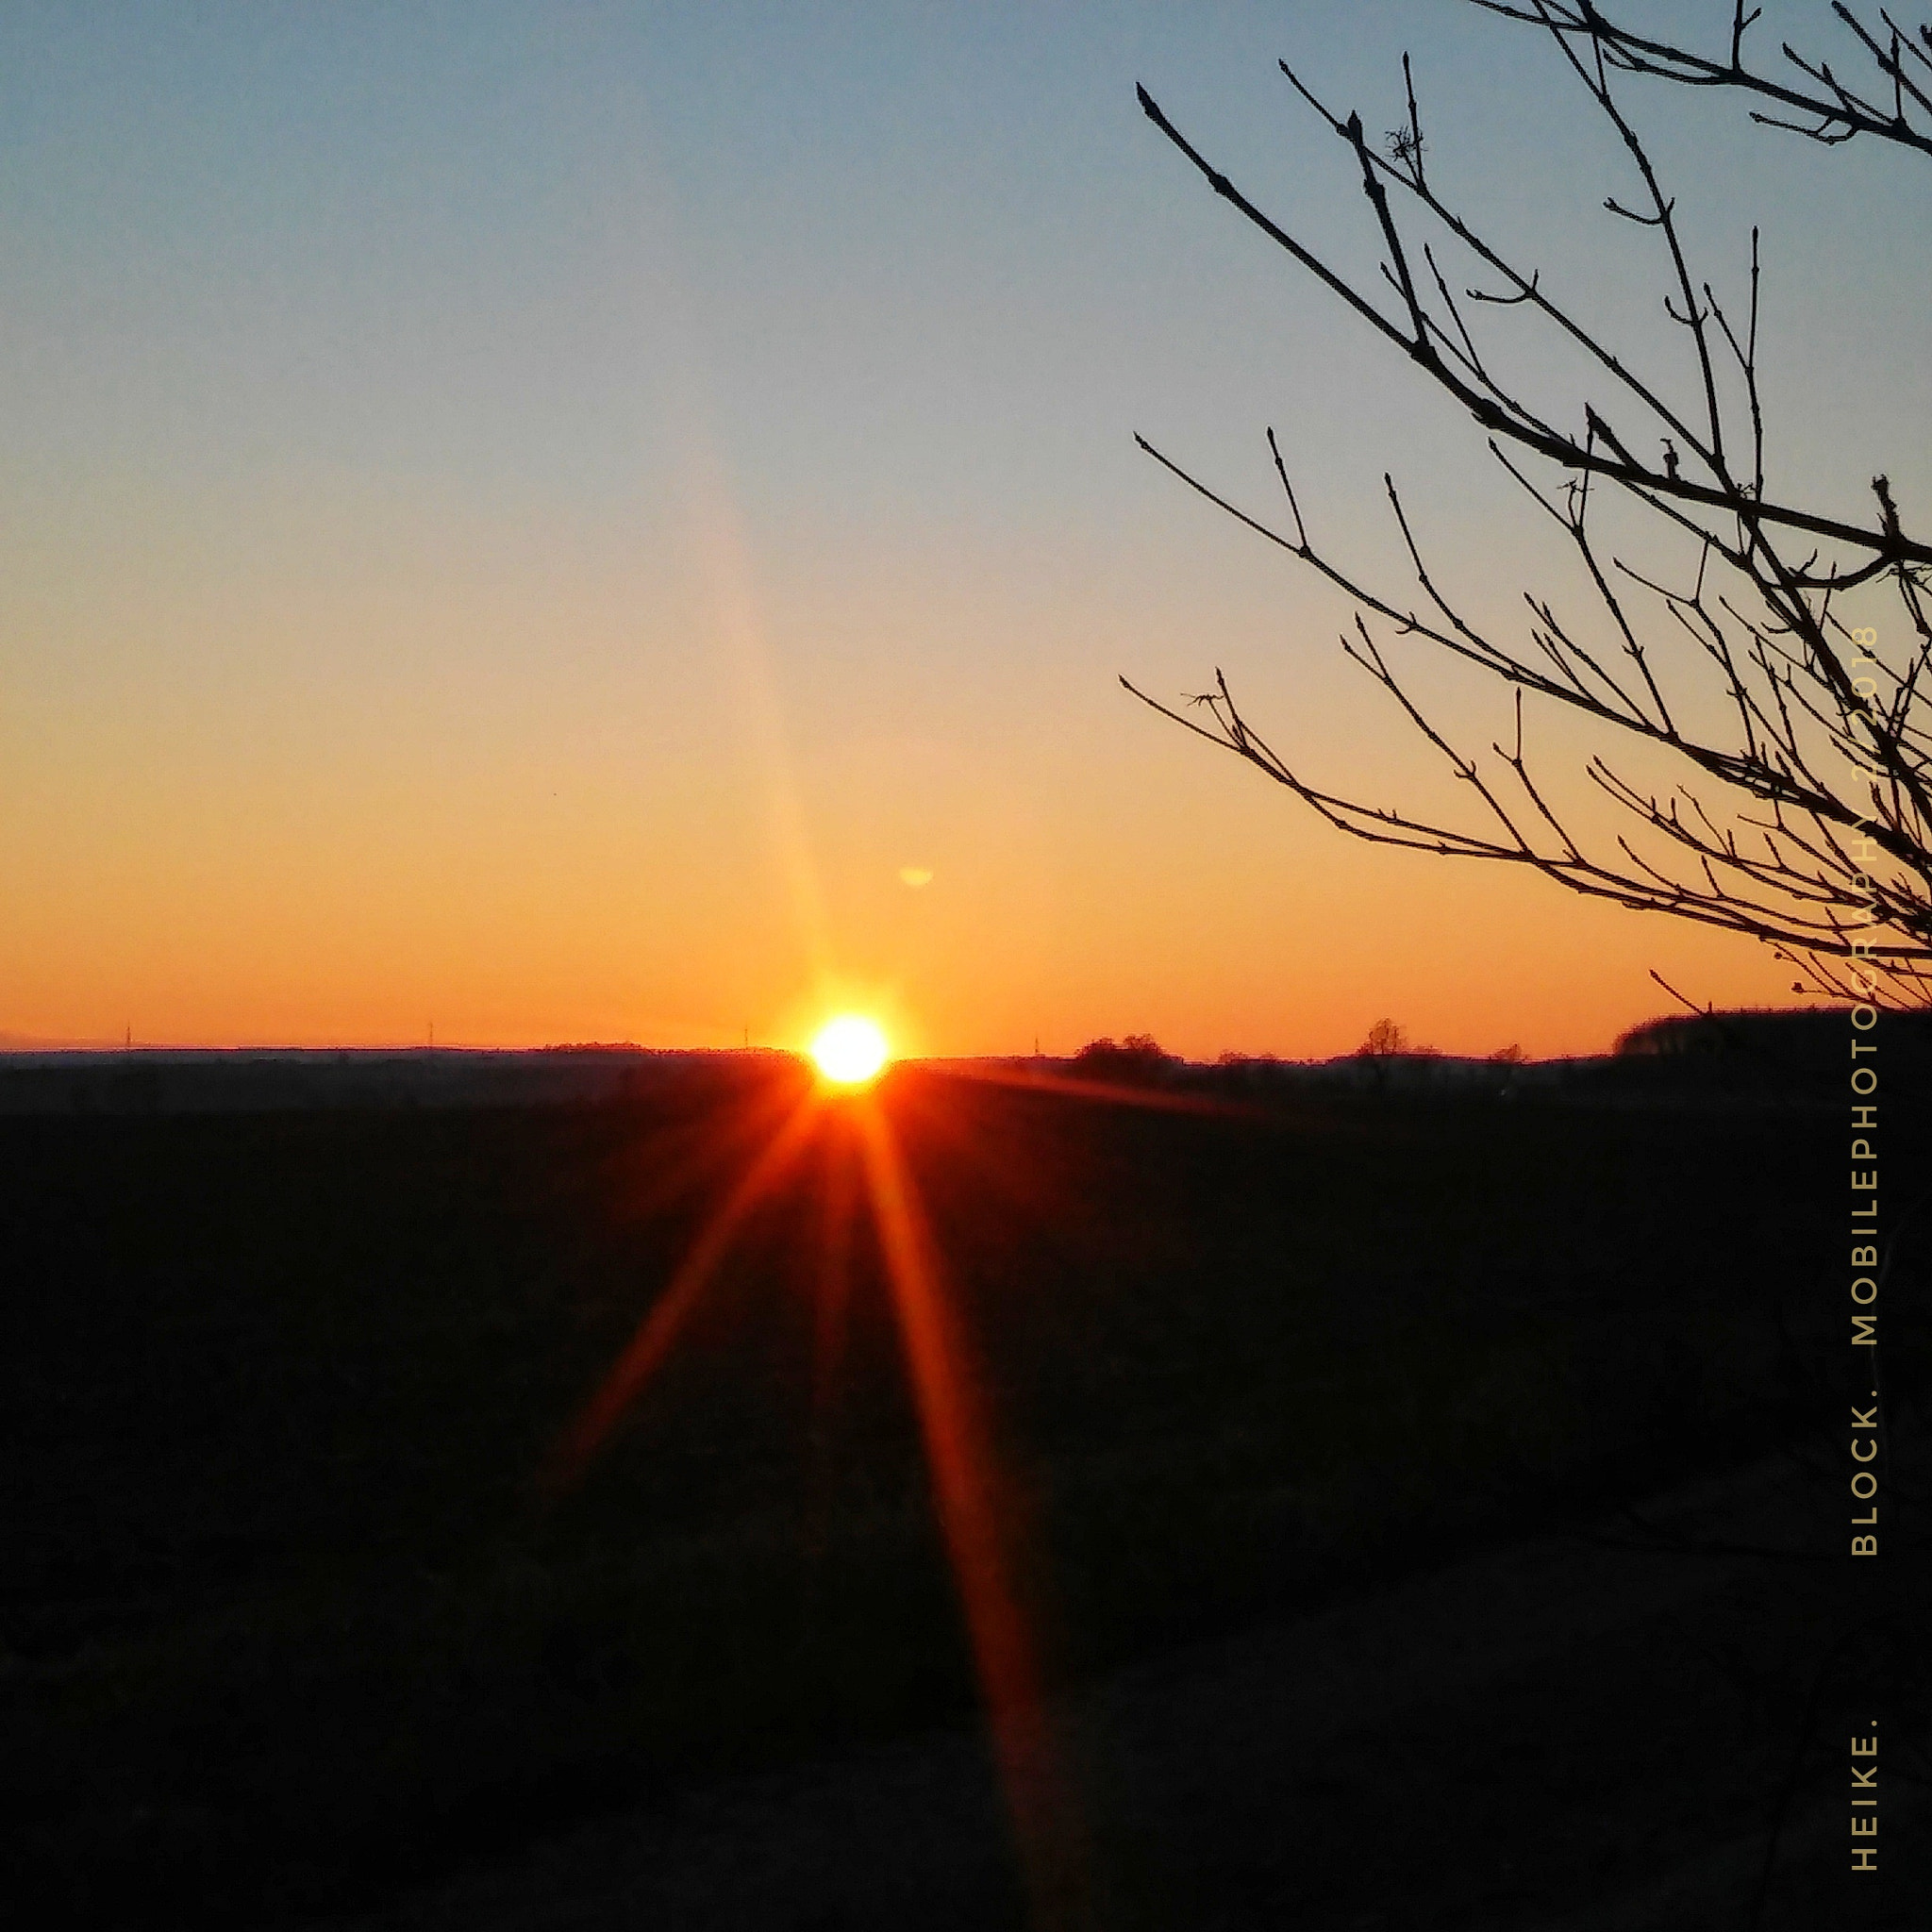 LG G STYLO sample photo. Winterly sunset photography